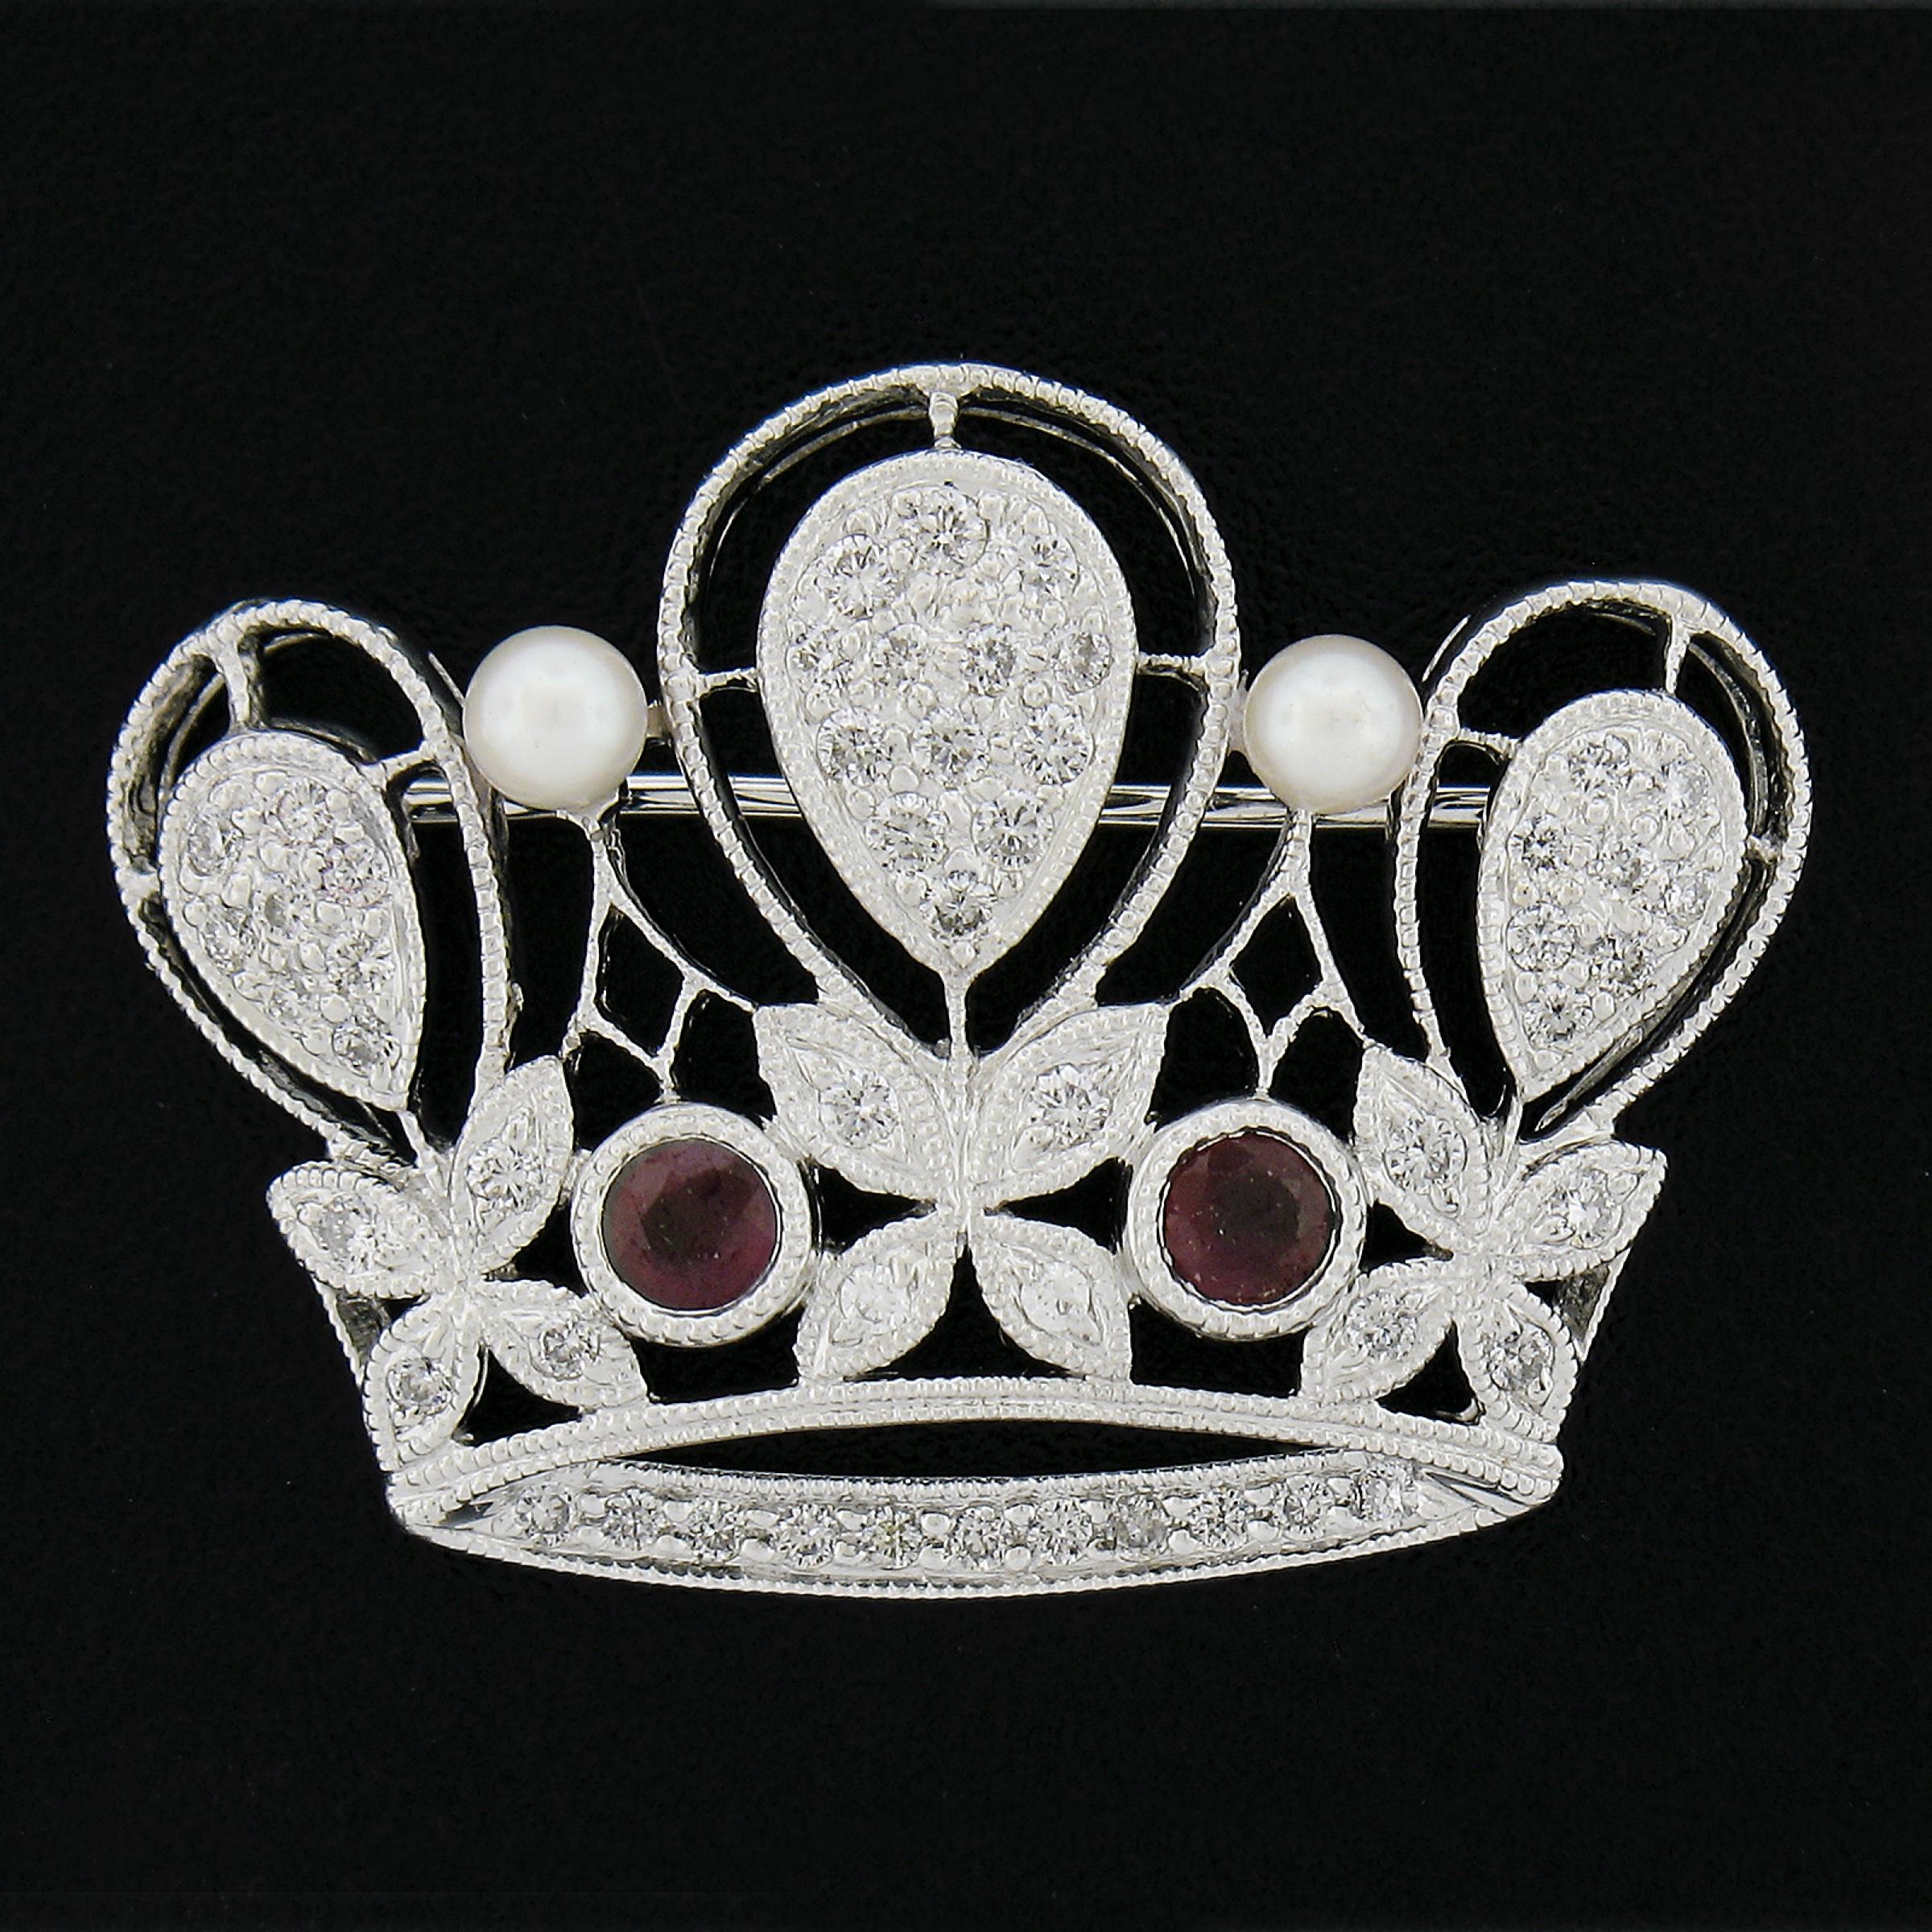 --Pierre(s) :...
(2) Rubis véritable naturel - taille ronde - serti - couleur rouge foncé - 0,40ctw (approx.)
(2) Perles de culture véritables - forme ronde - set de tiges - couleur blanche  - 3.1mm  chacun (environ)
(52) Véritables diamants de